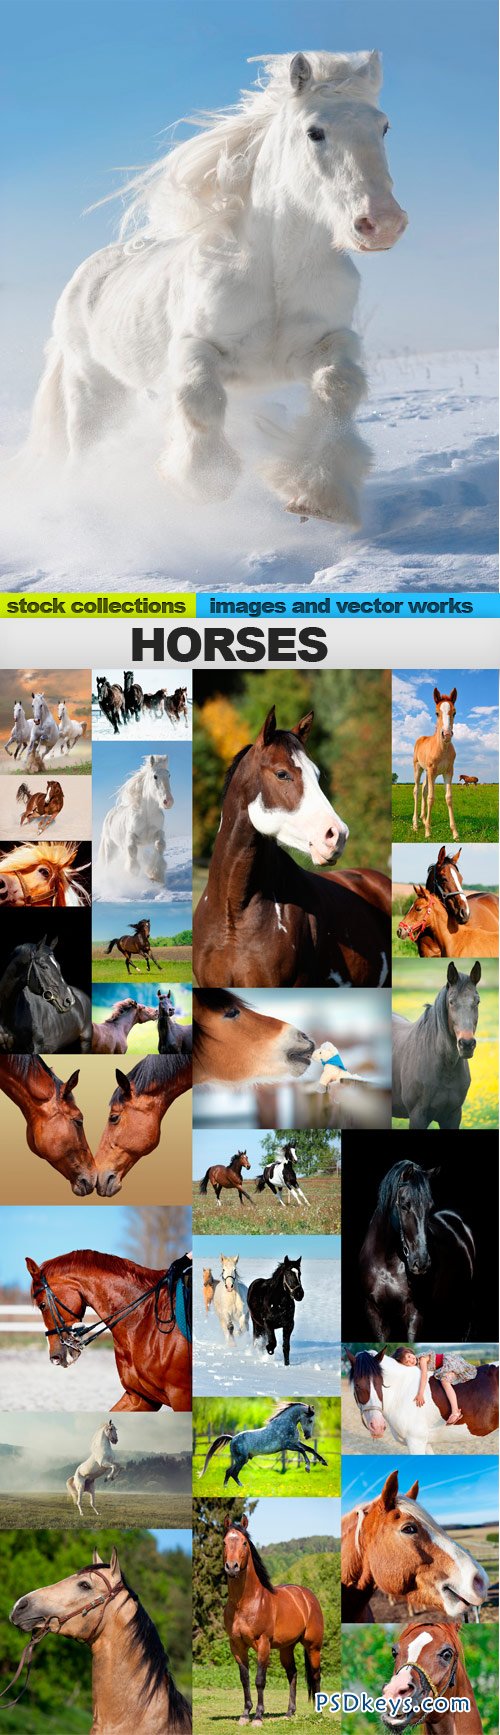 Horses 25xUHQ JPEG